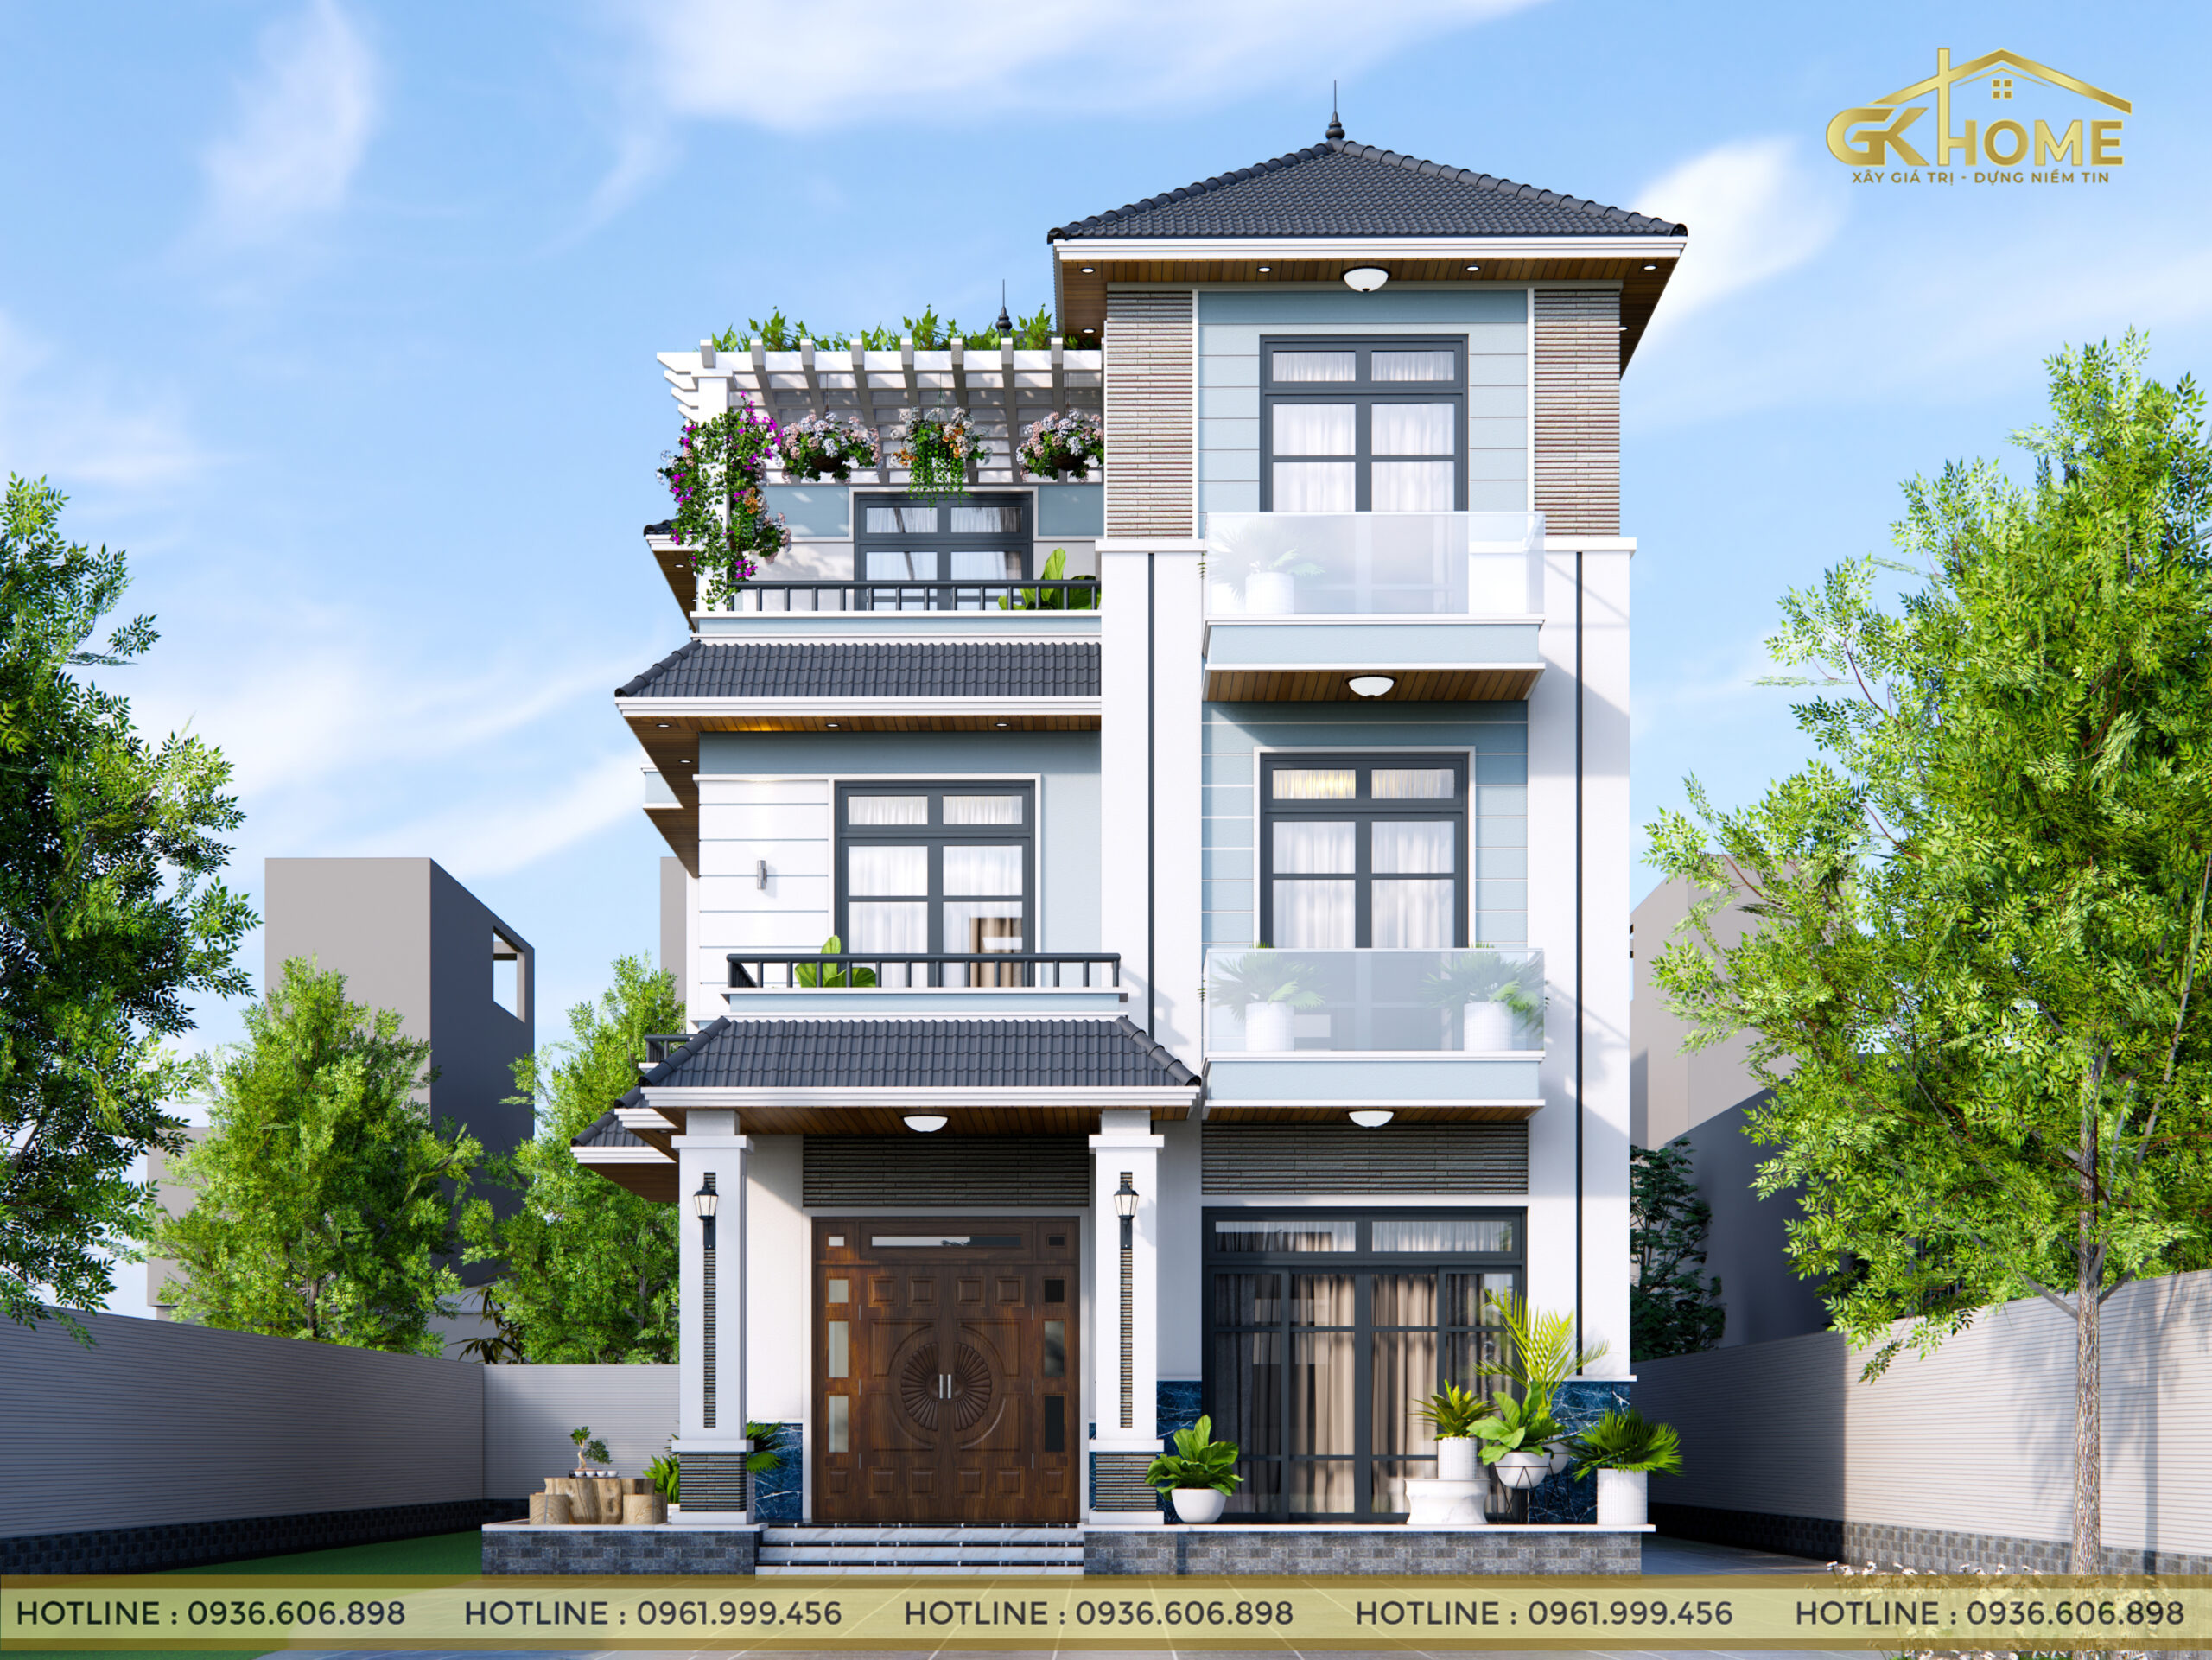 Mẫu nhà 3 tầng đẹp mái thái mặt tiền rộng 8m | Phan Kiến Phát chuyên tư vấn  - thiết kế - xây dựng nhà phố, biệt thự, nhà đẹp, công trình dân dụng.